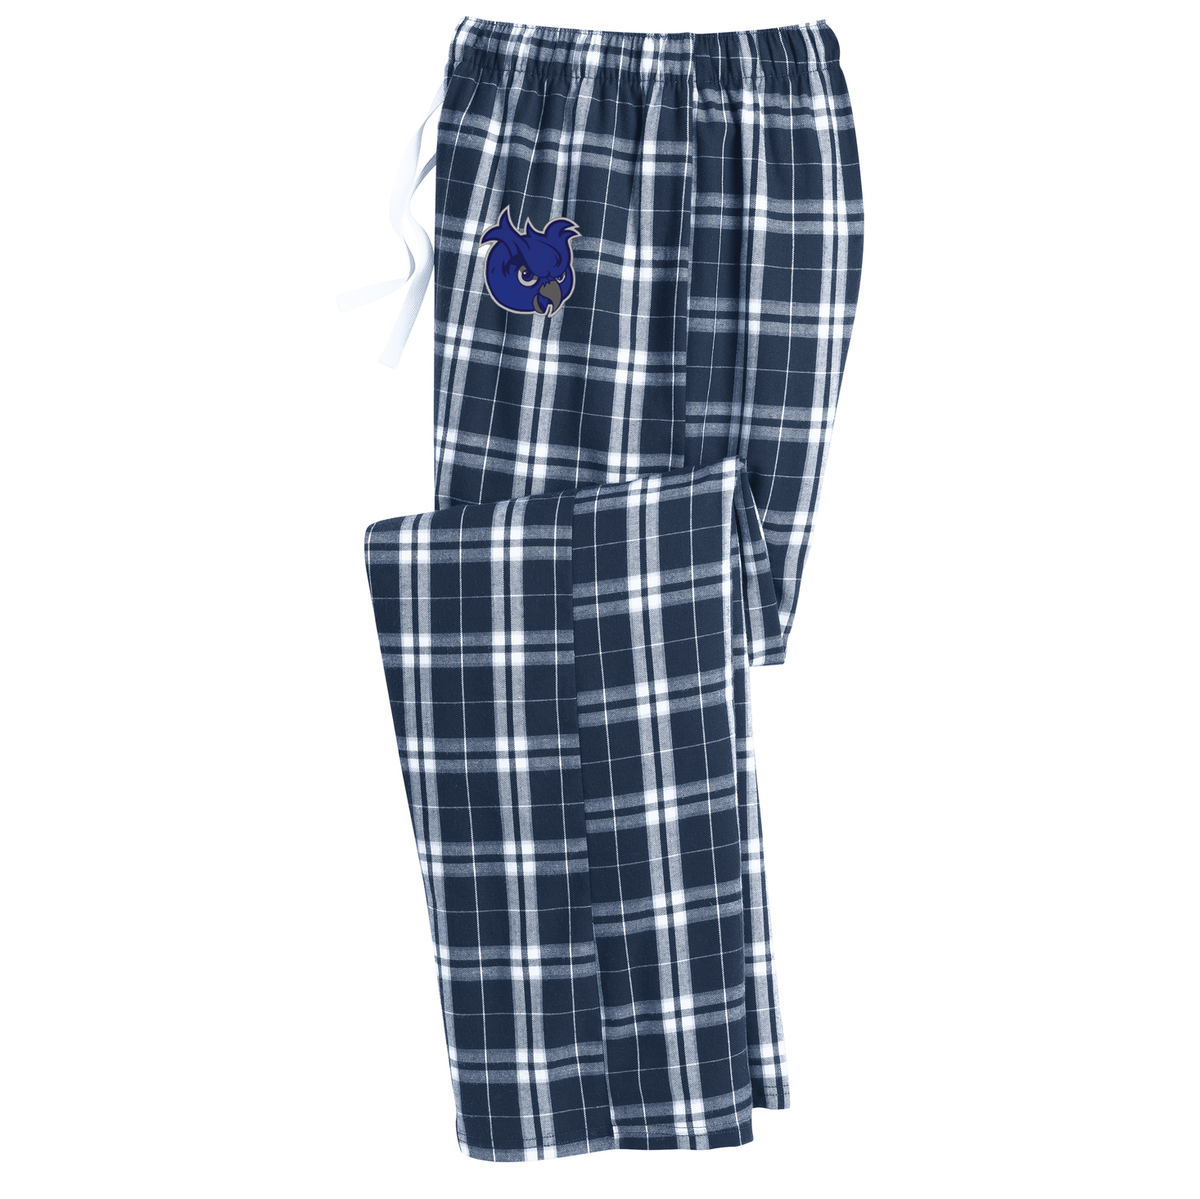 SCSU Lacrosse Plaid Pajama Pants